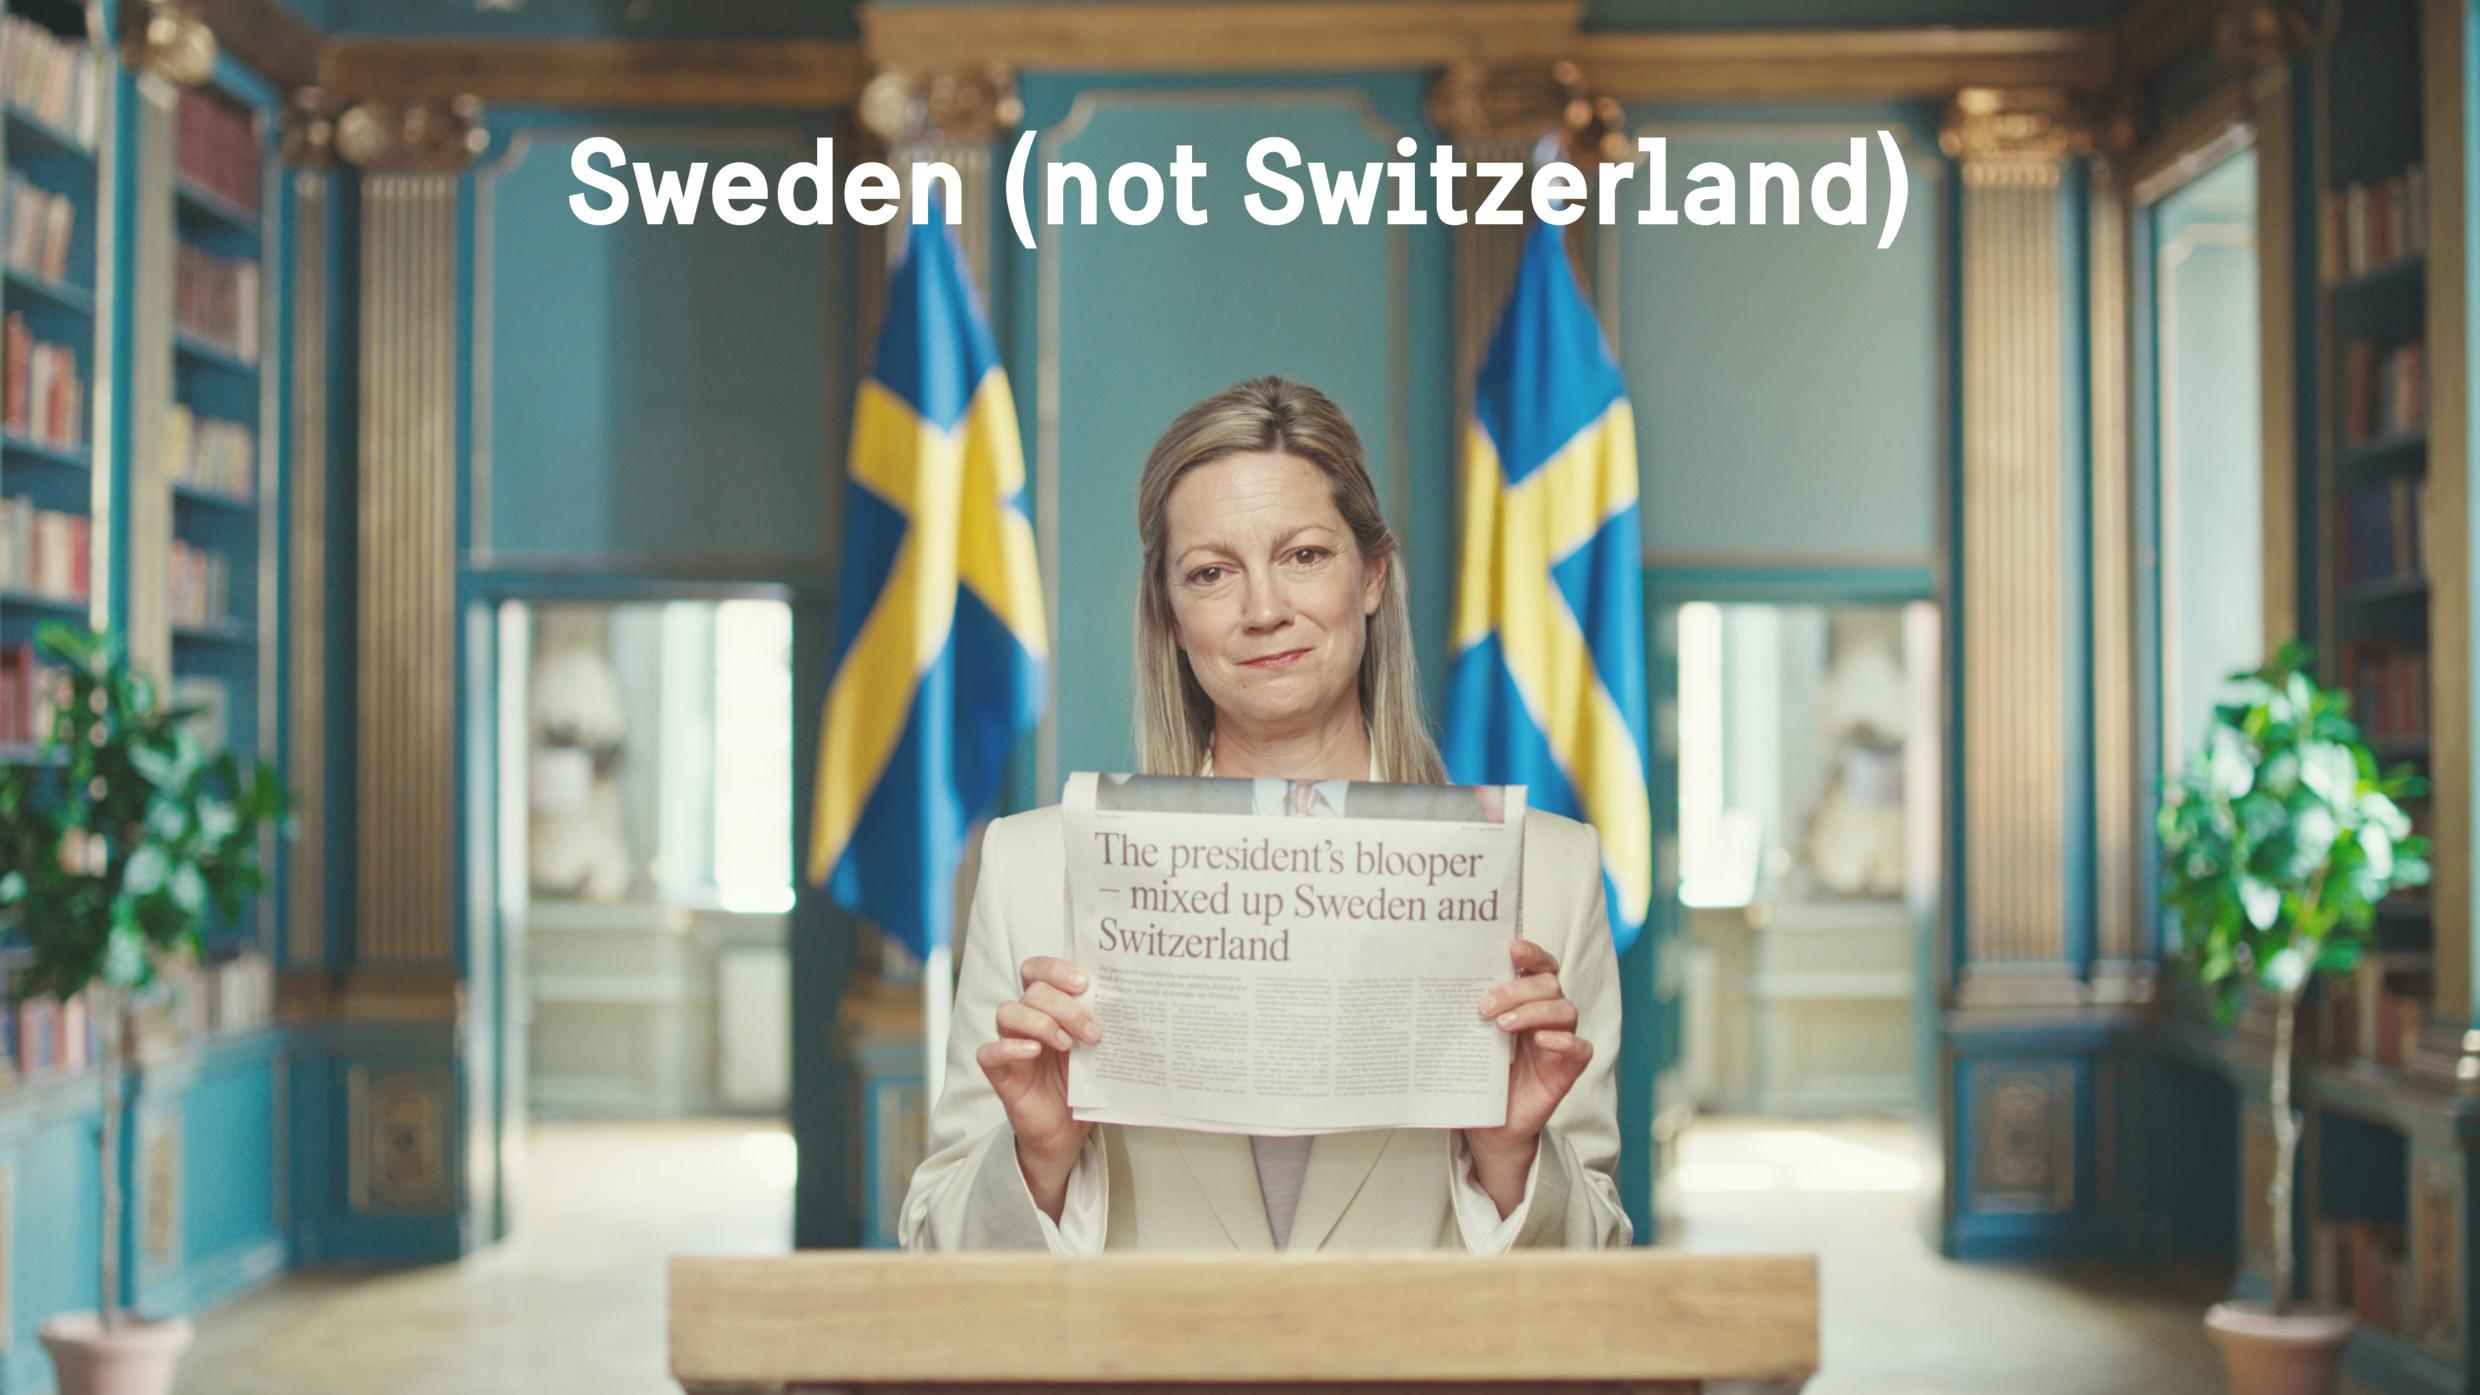 Kvinna står och håller fram en tidning som visas i bild. Text i bild som säger Sweden (not Switzerland).